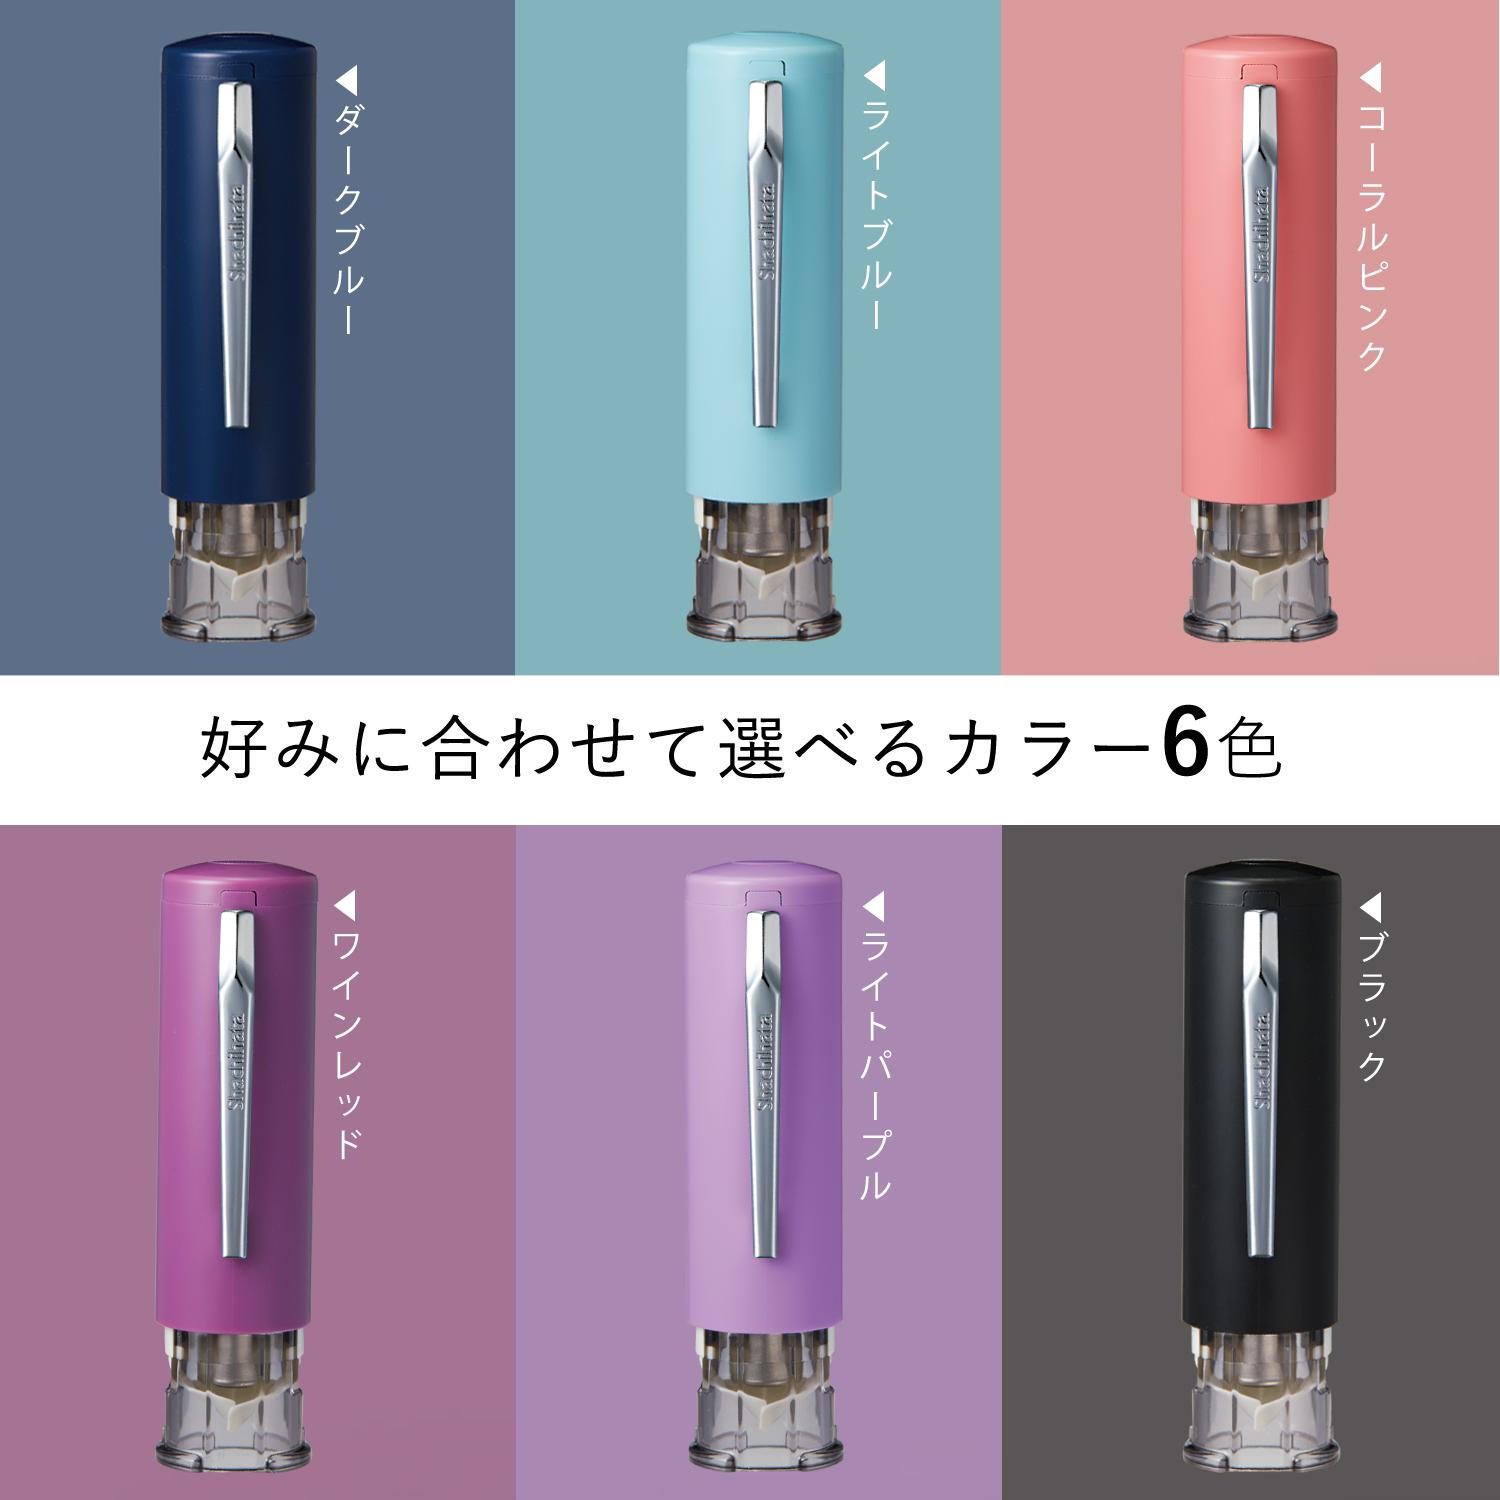 キャップレス6 ライトパープル 別製|XL-U6N-5|商品カタログ|シヤチハタ